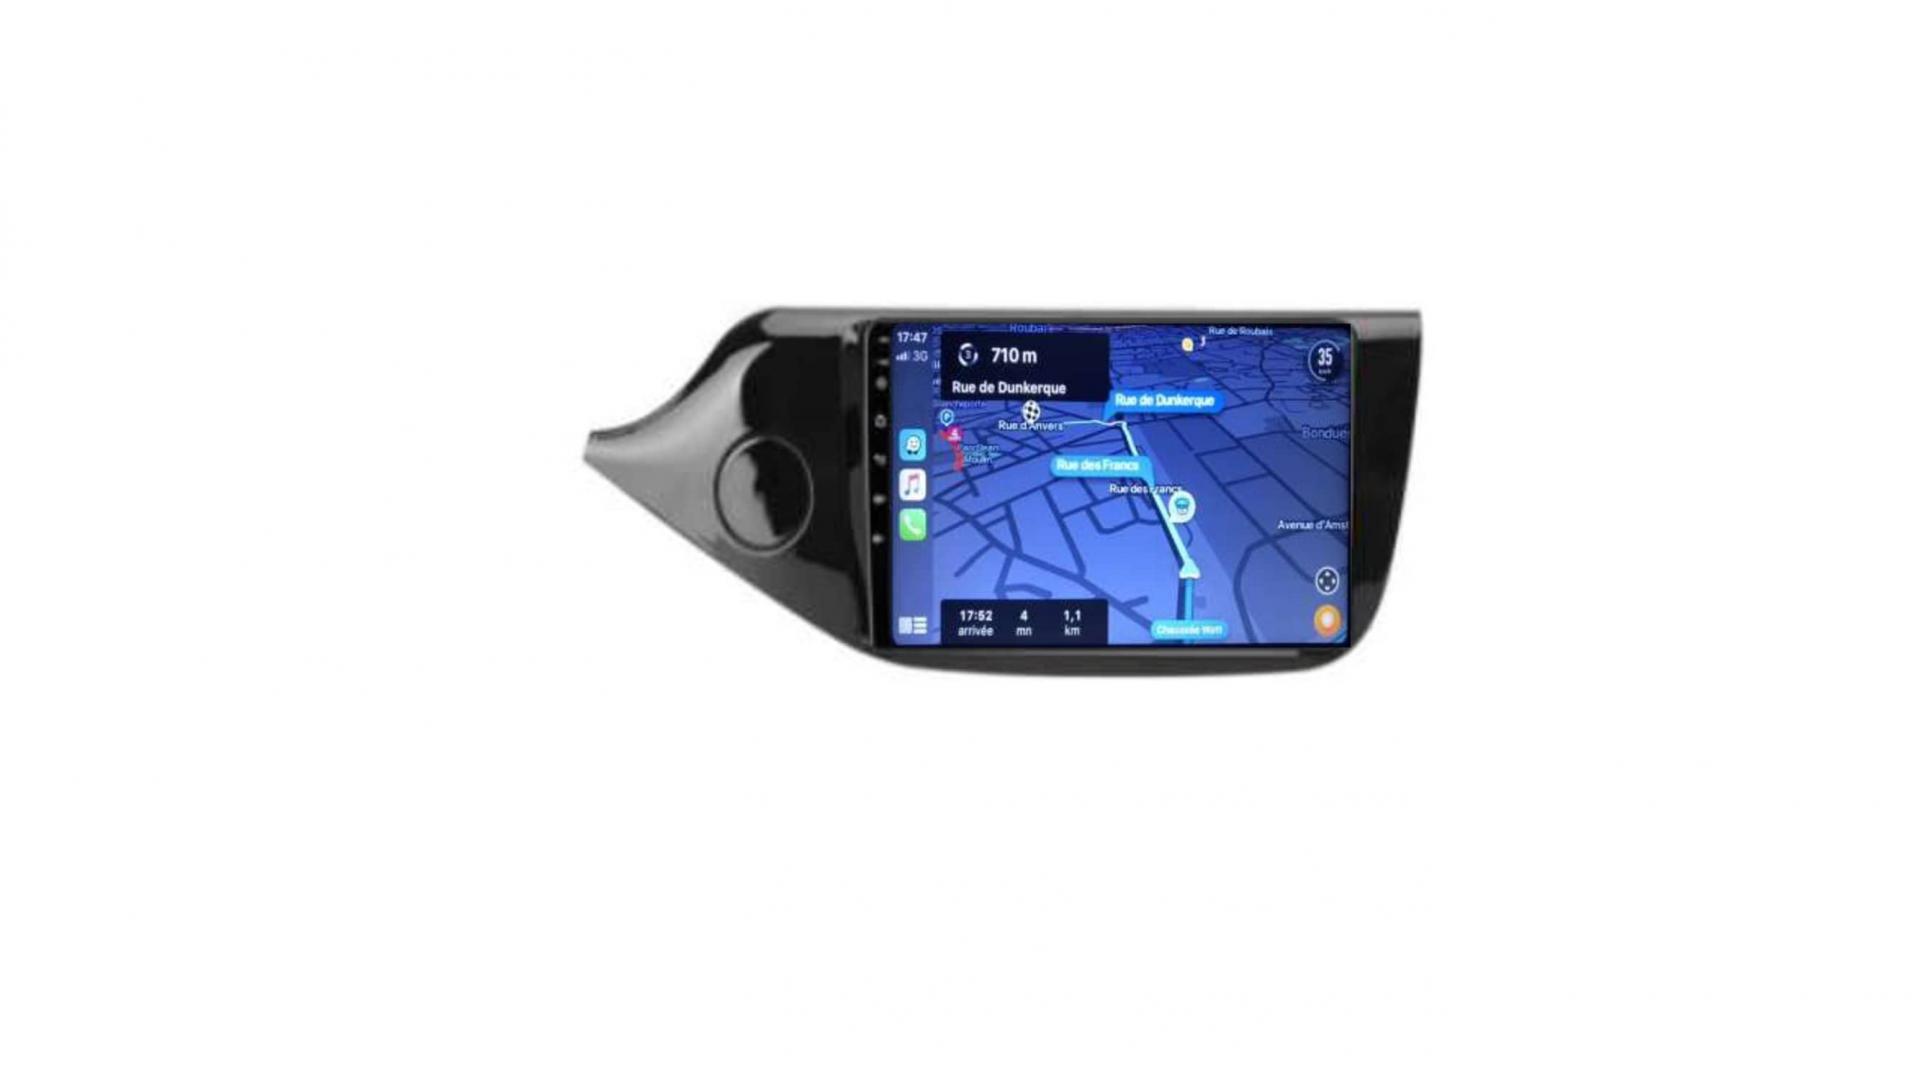 Autoradio androi d auto carplay gps bluetooth kia ceed depuis 2013 4